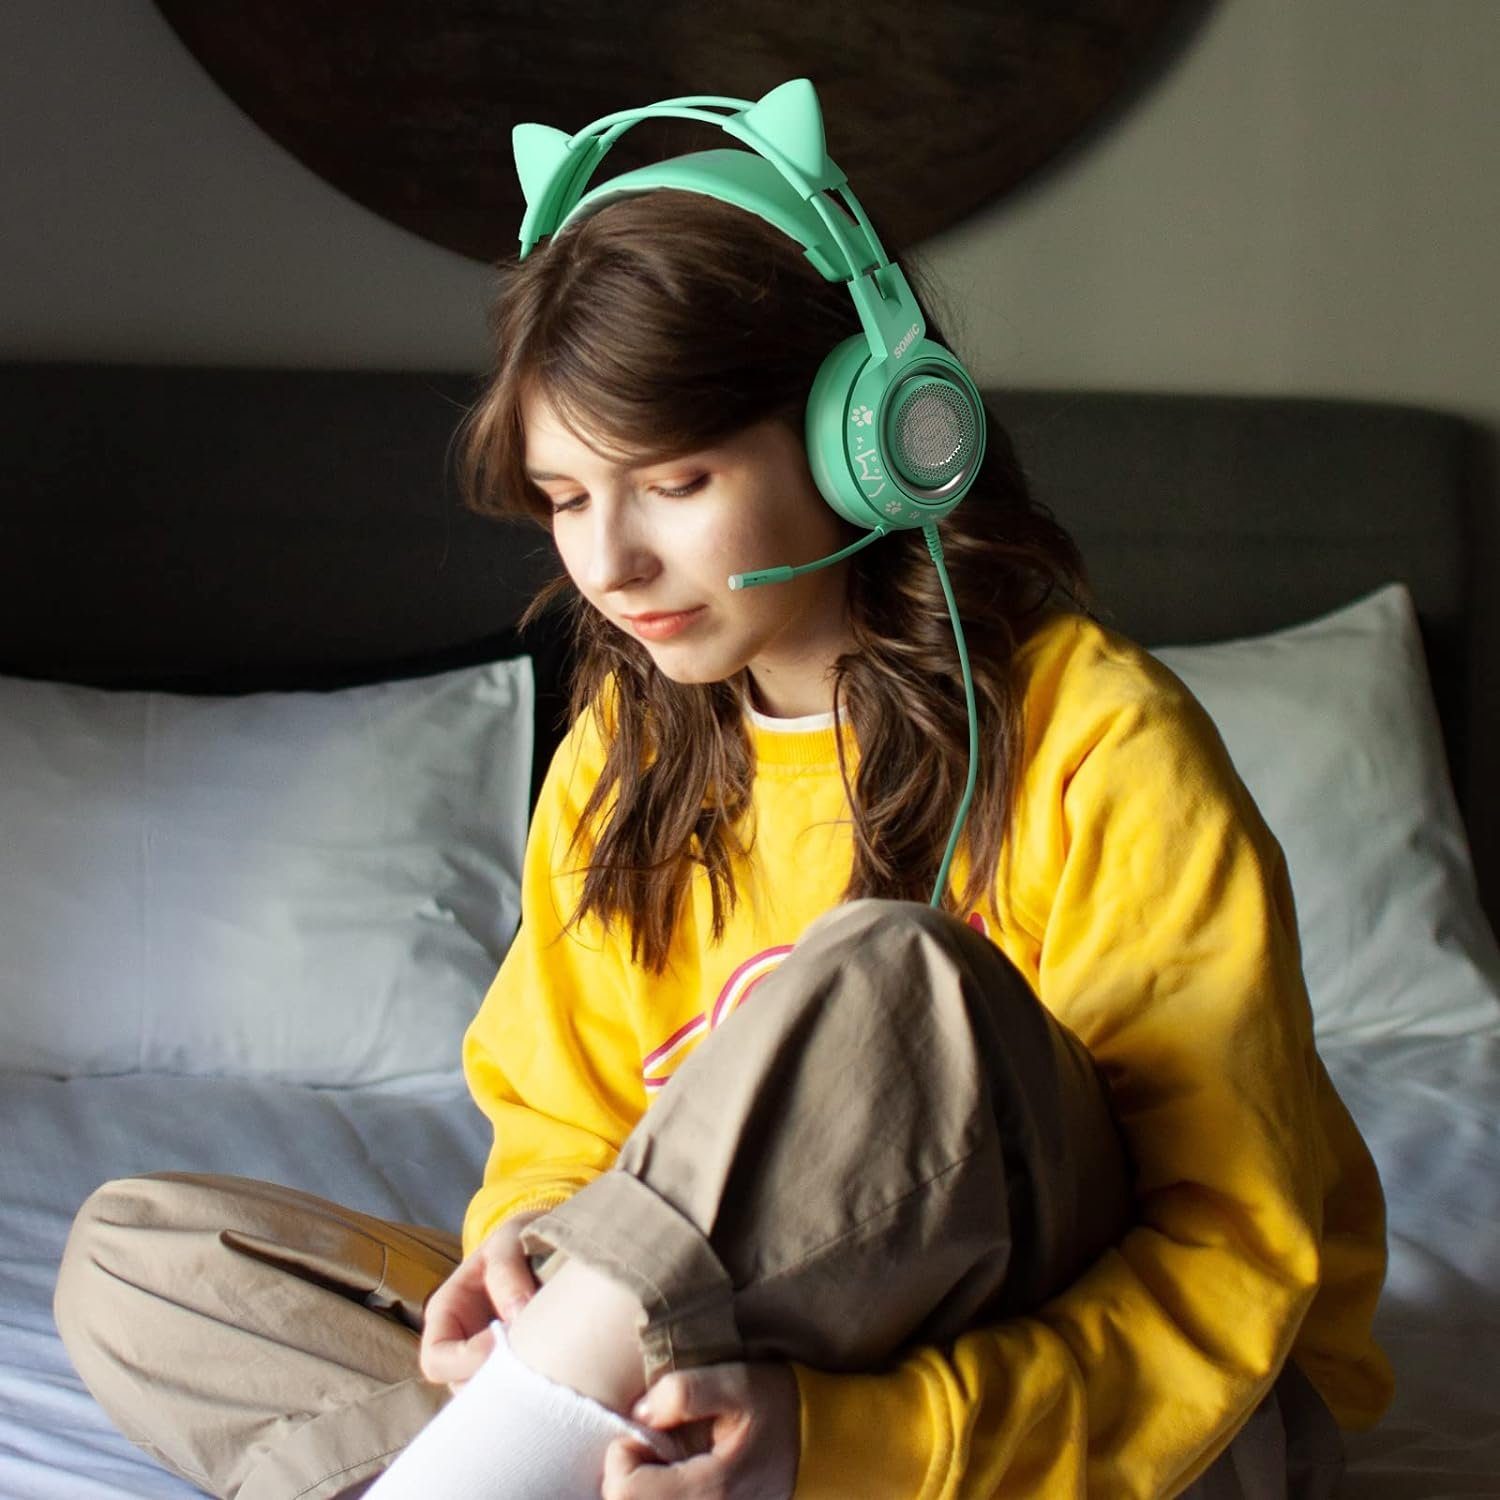 Ohr) Gaming-Headset Gaming-Headset Mädchen Ohr, Mikrofon Kopfhörer mit G951S über In-Line-Mikrofonsteuerung, für (mit dem Stereo-Sound-Kopfhörer Frauen, Grünes und am Somic